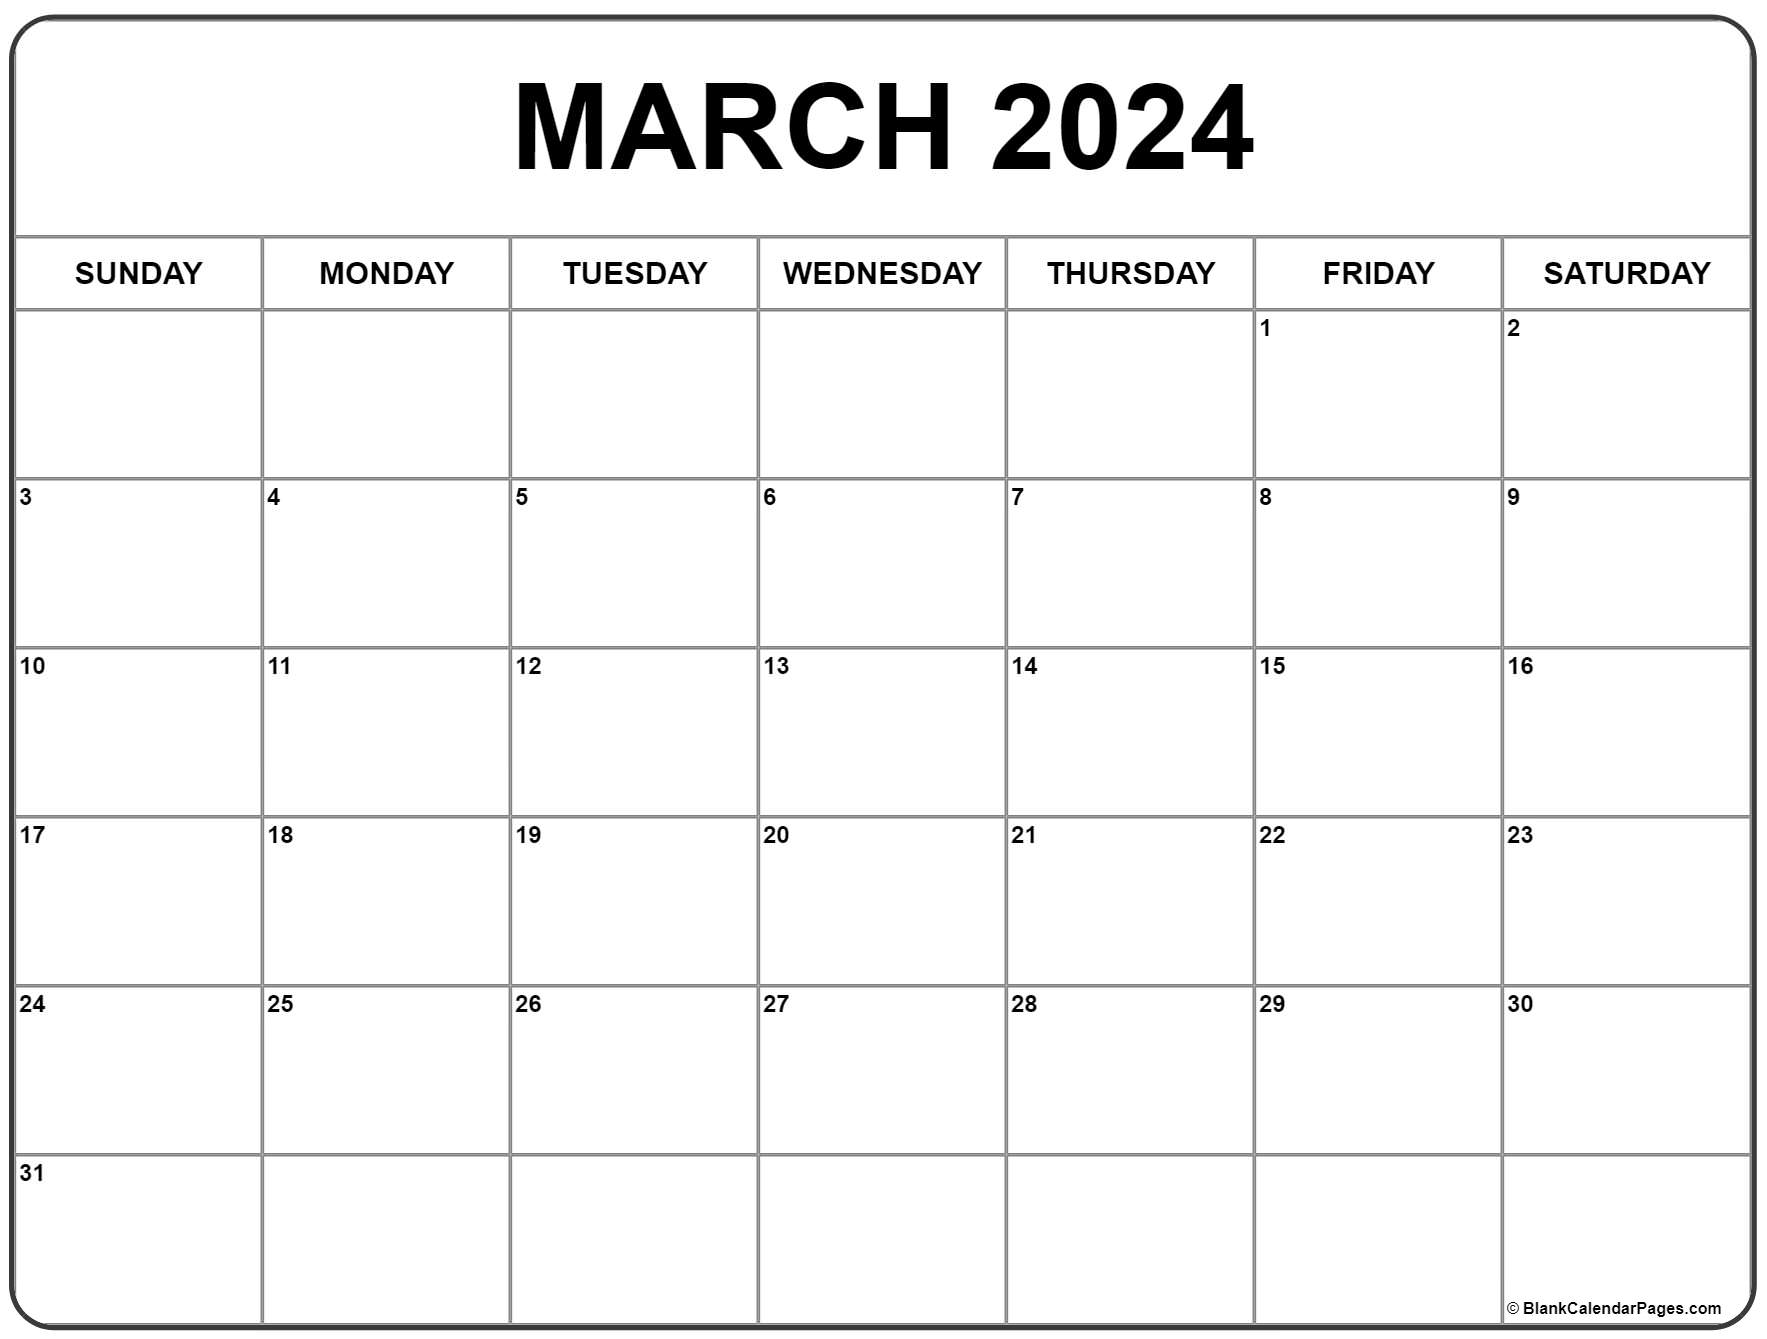 March 2024 Calendar | Free Printable Calendar for Calendar 2024 March Printable